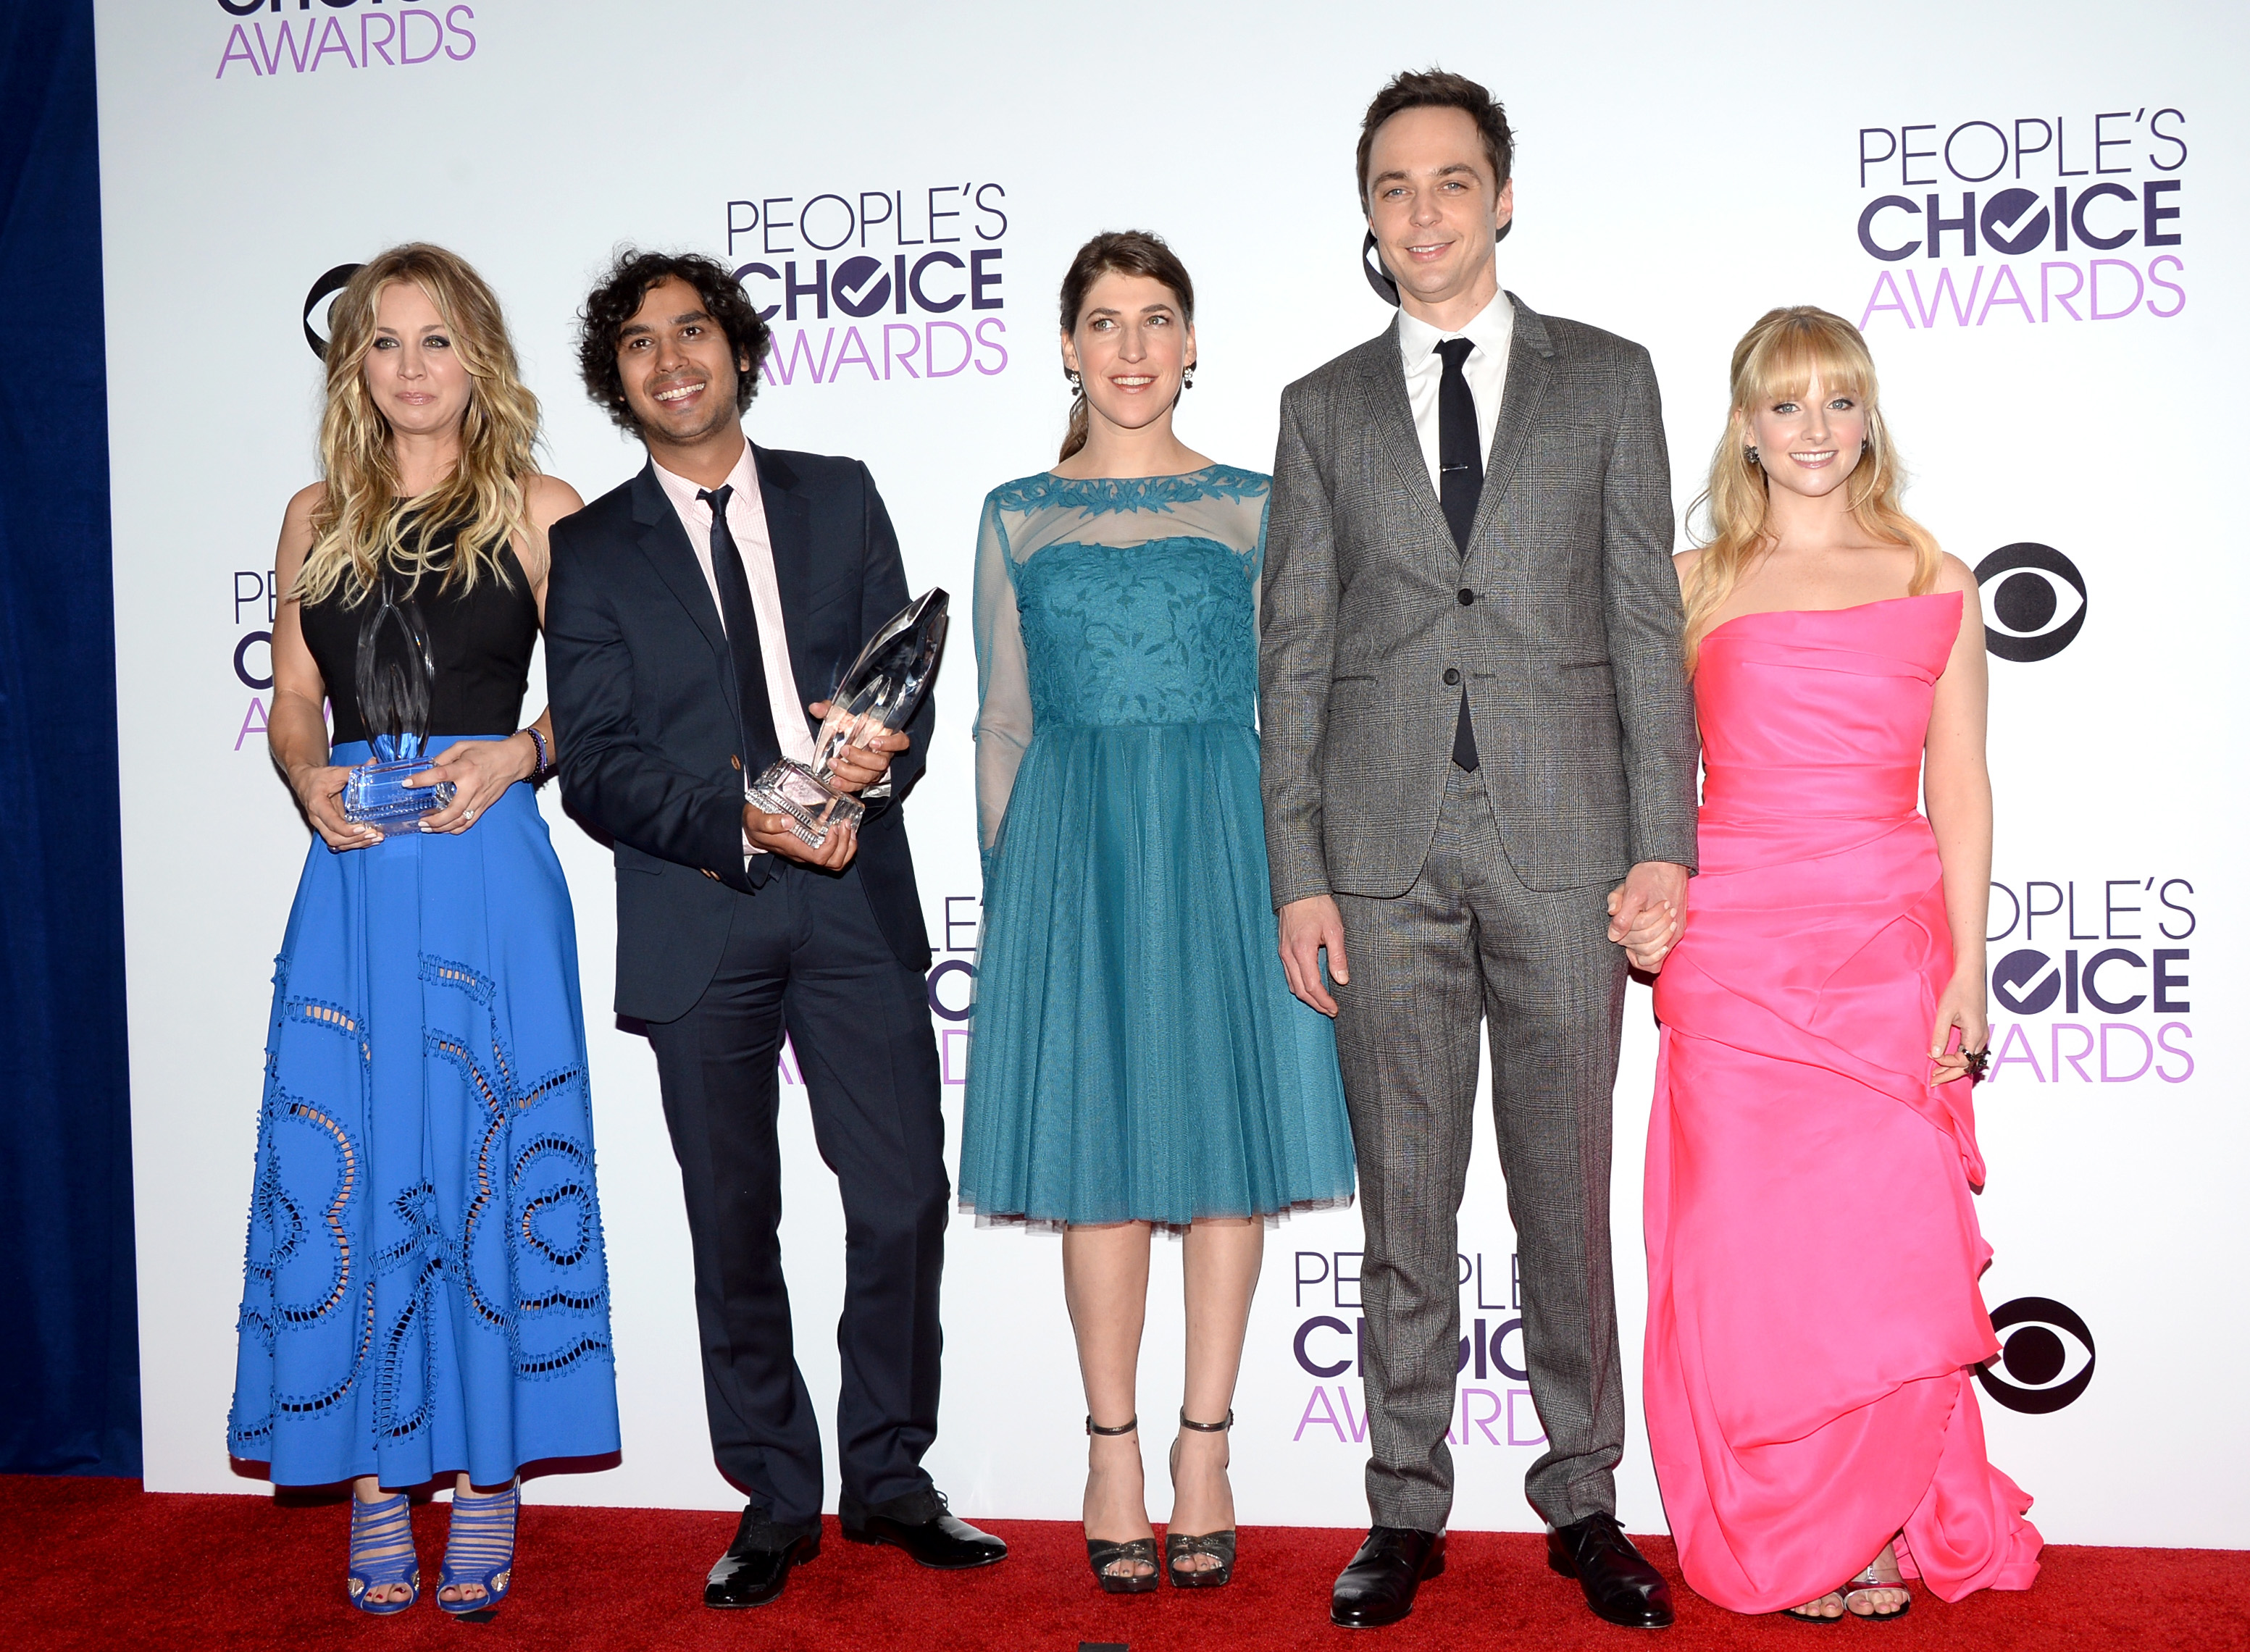 People’s Choice Awards Cheerfully Played: The Big Bang Theory